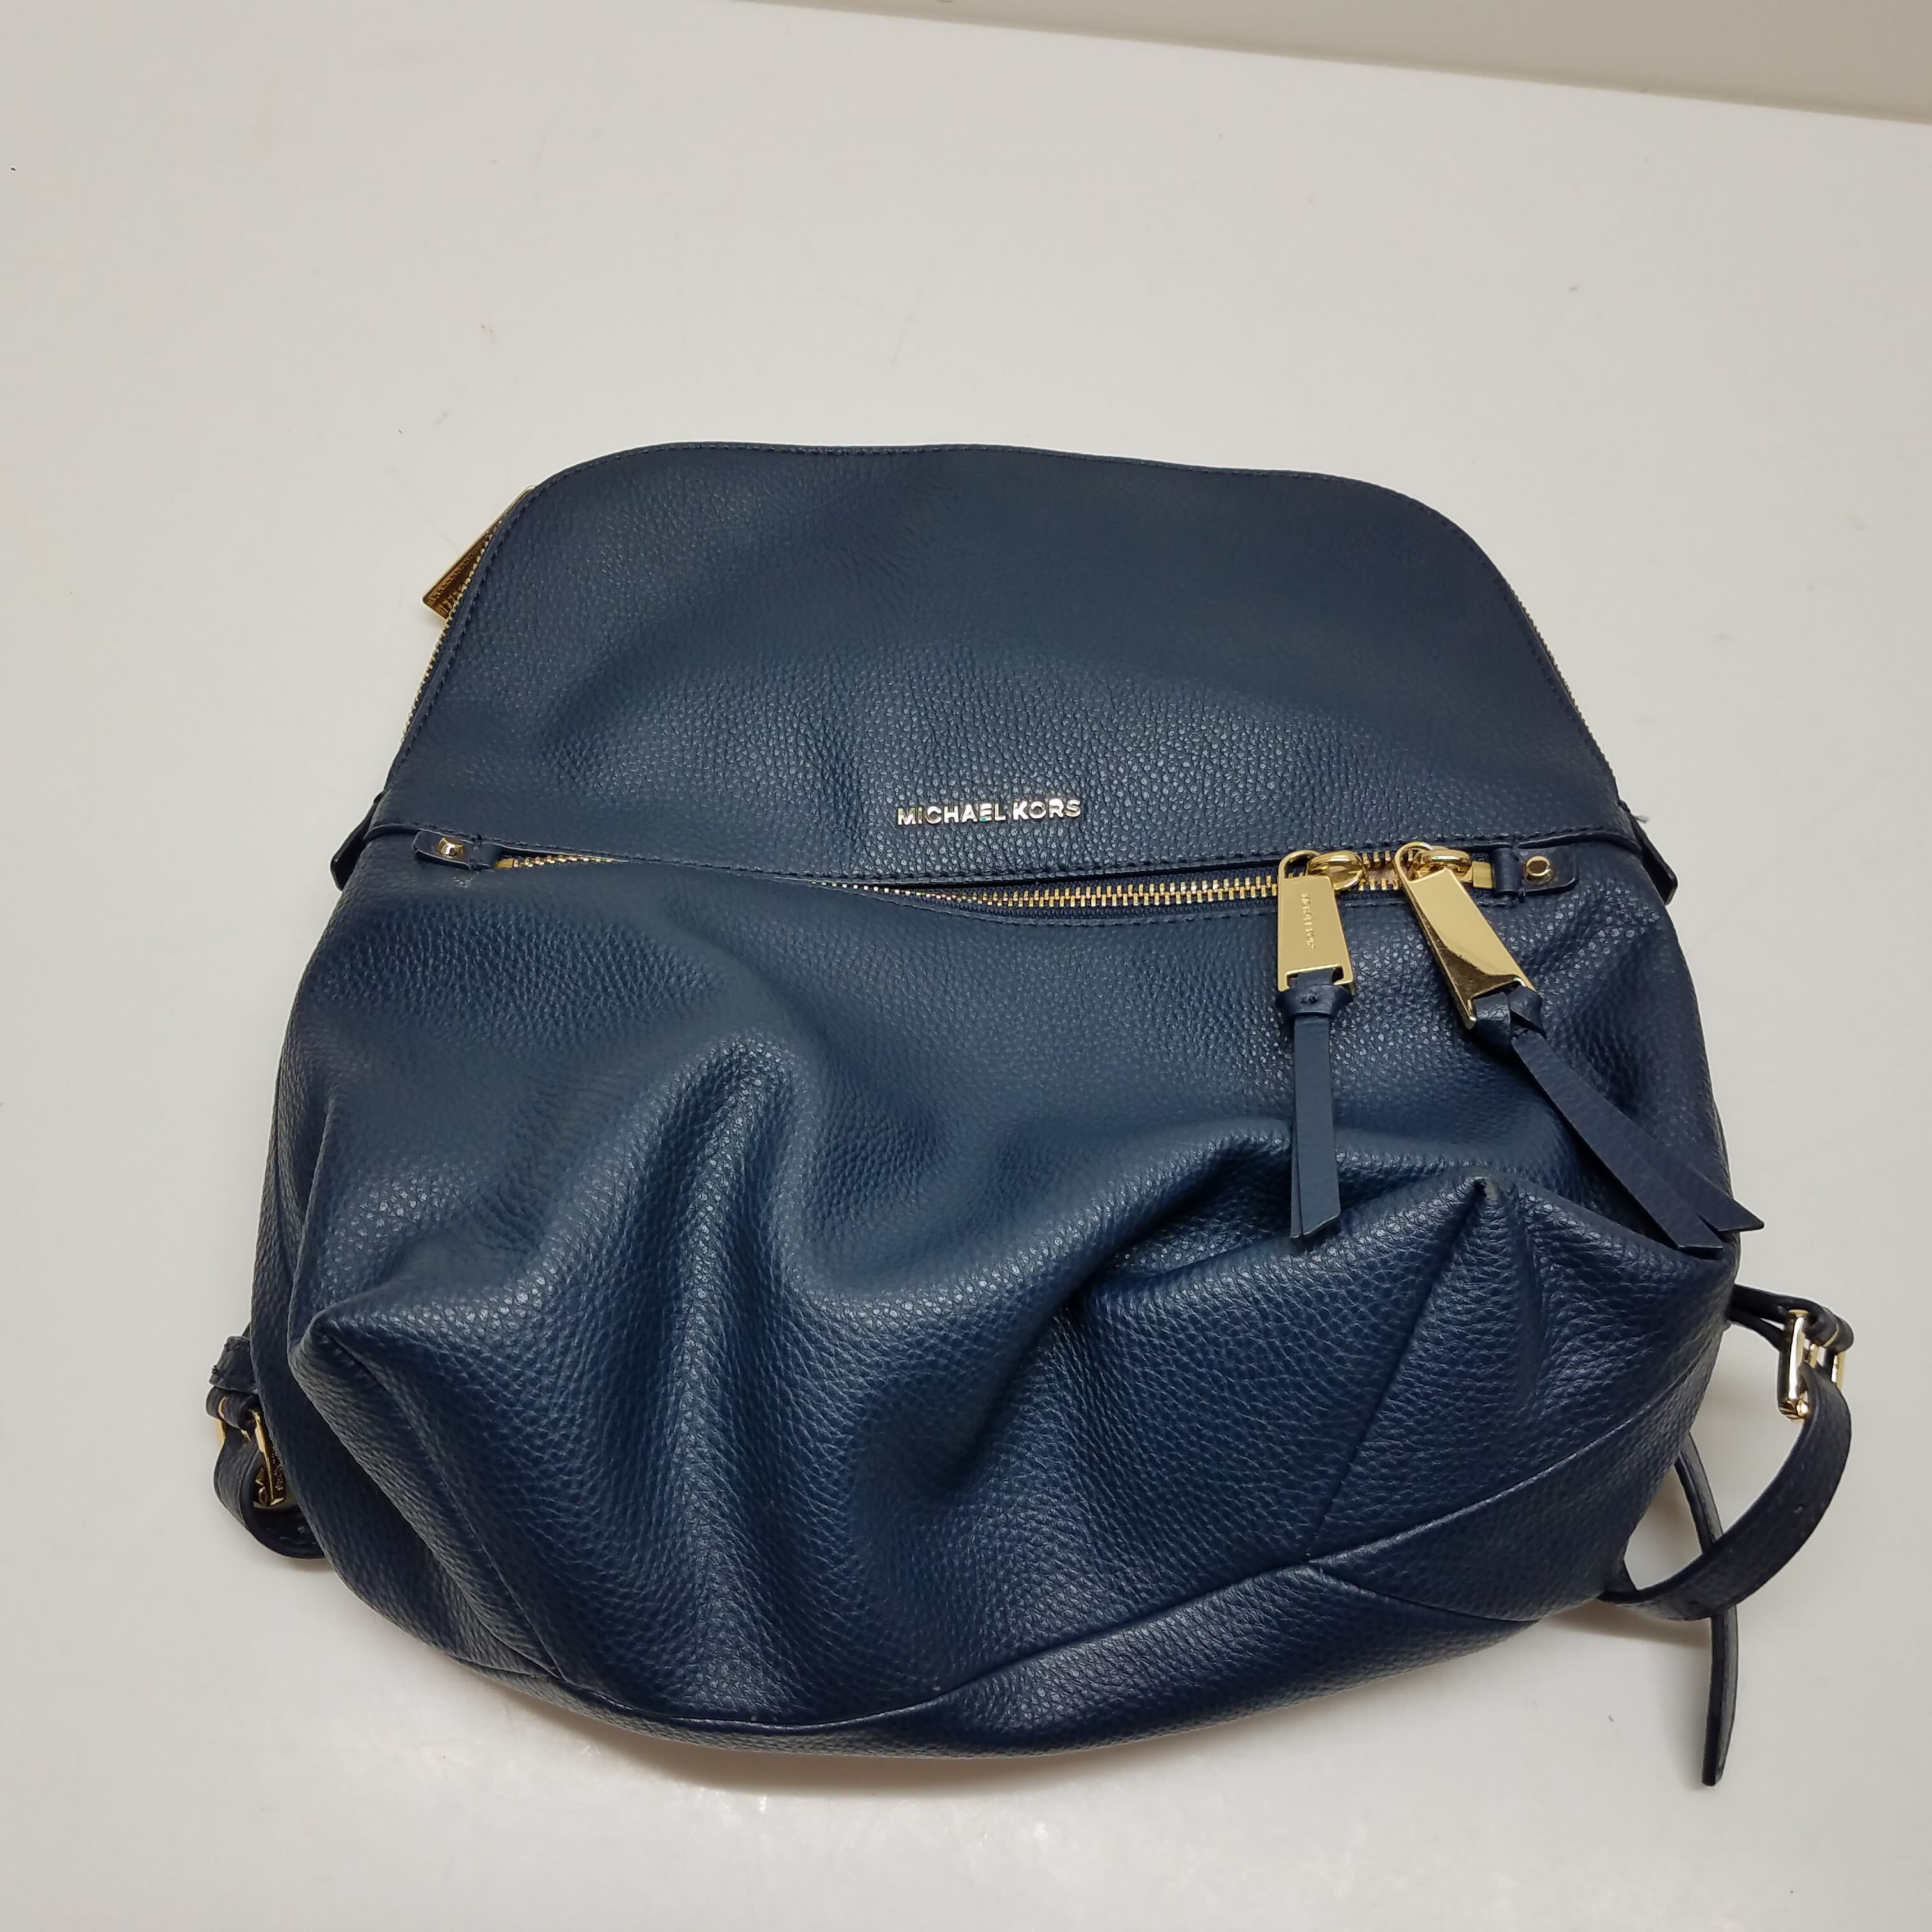 VISM Concealed Carry Backpack Purse BW9316BL, Pale Blue. | J&G Sales